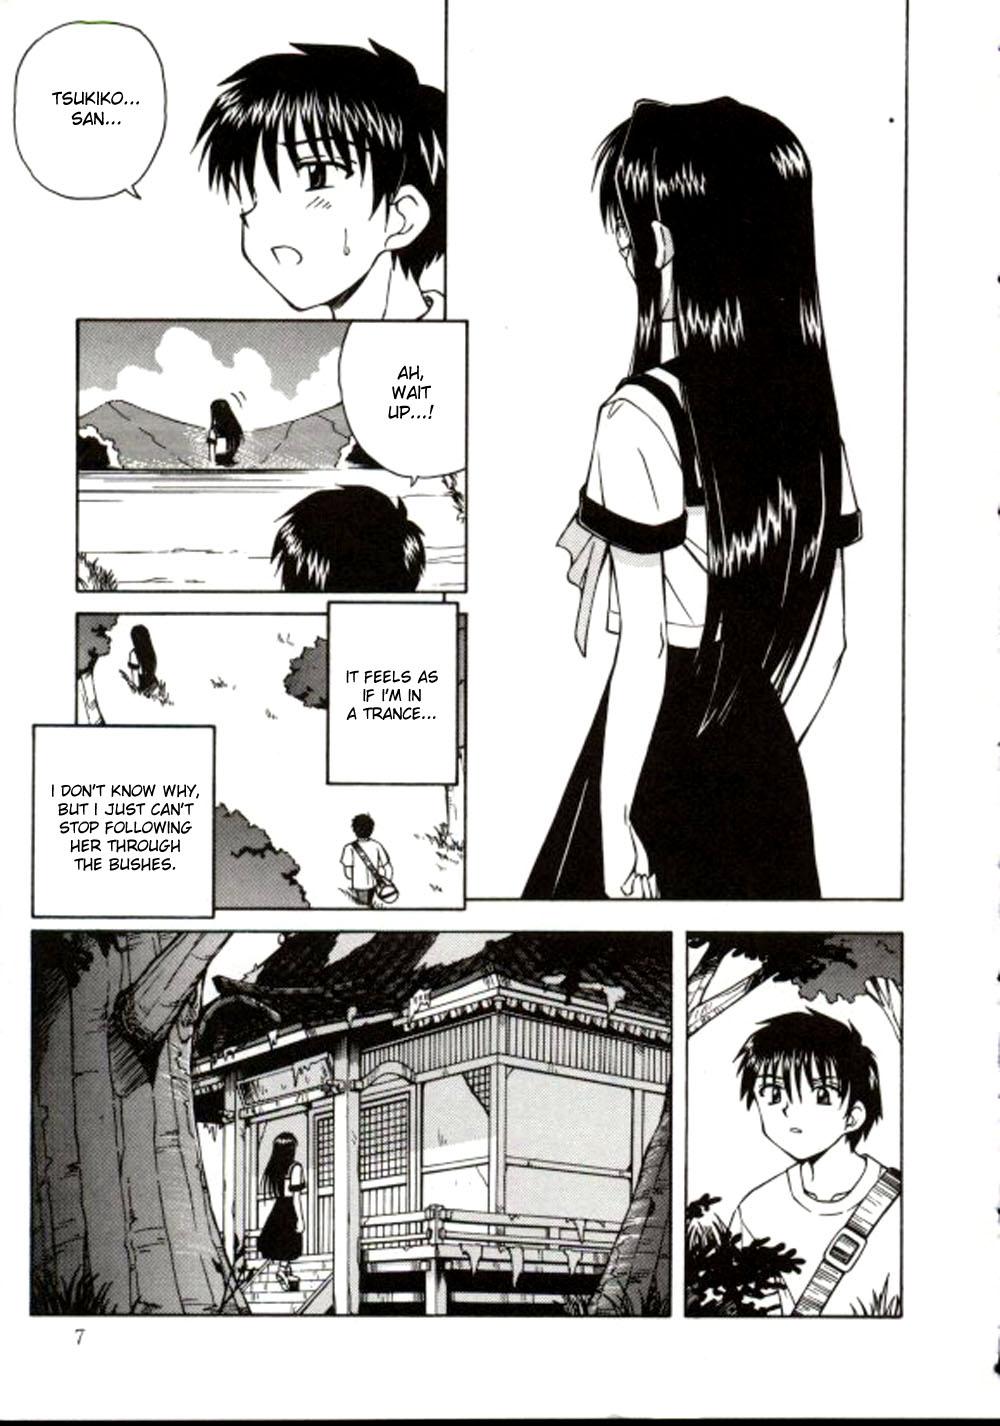 Woman Fucking Shiruwo Suunawa Flash - Page 7